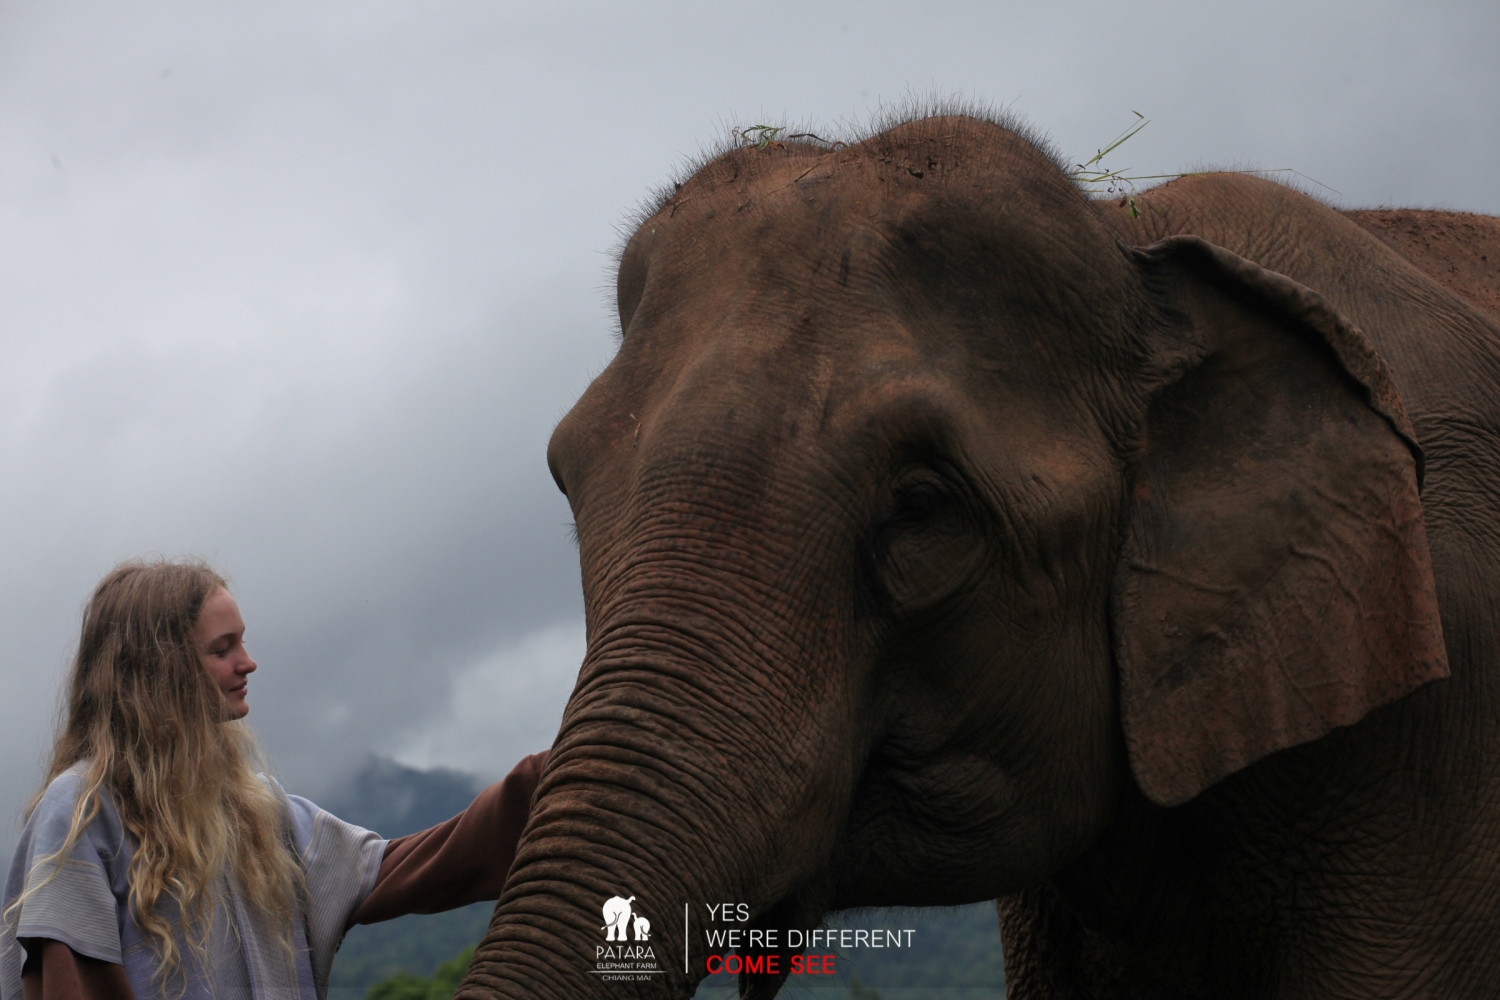 Elephant Caregiver for a day